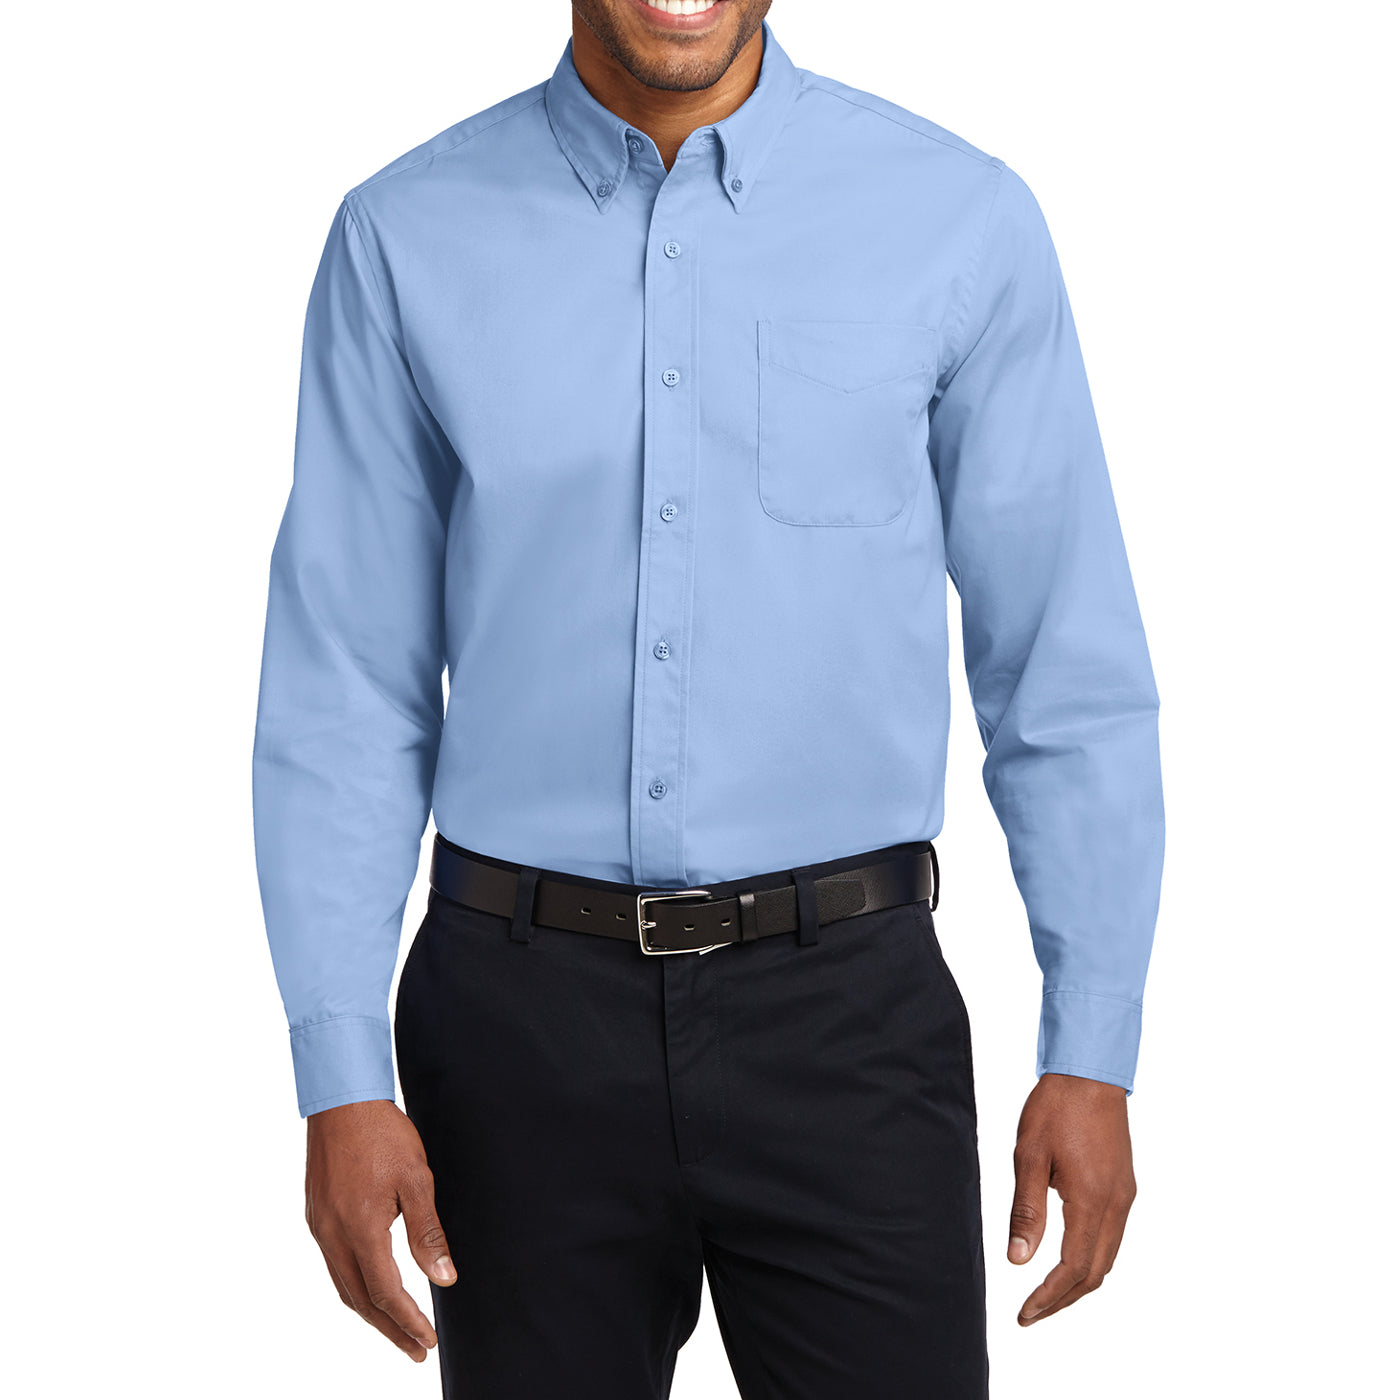 Men's Long Sleeve Easy Care Shirt - Light Blue/ Light Stone - Front